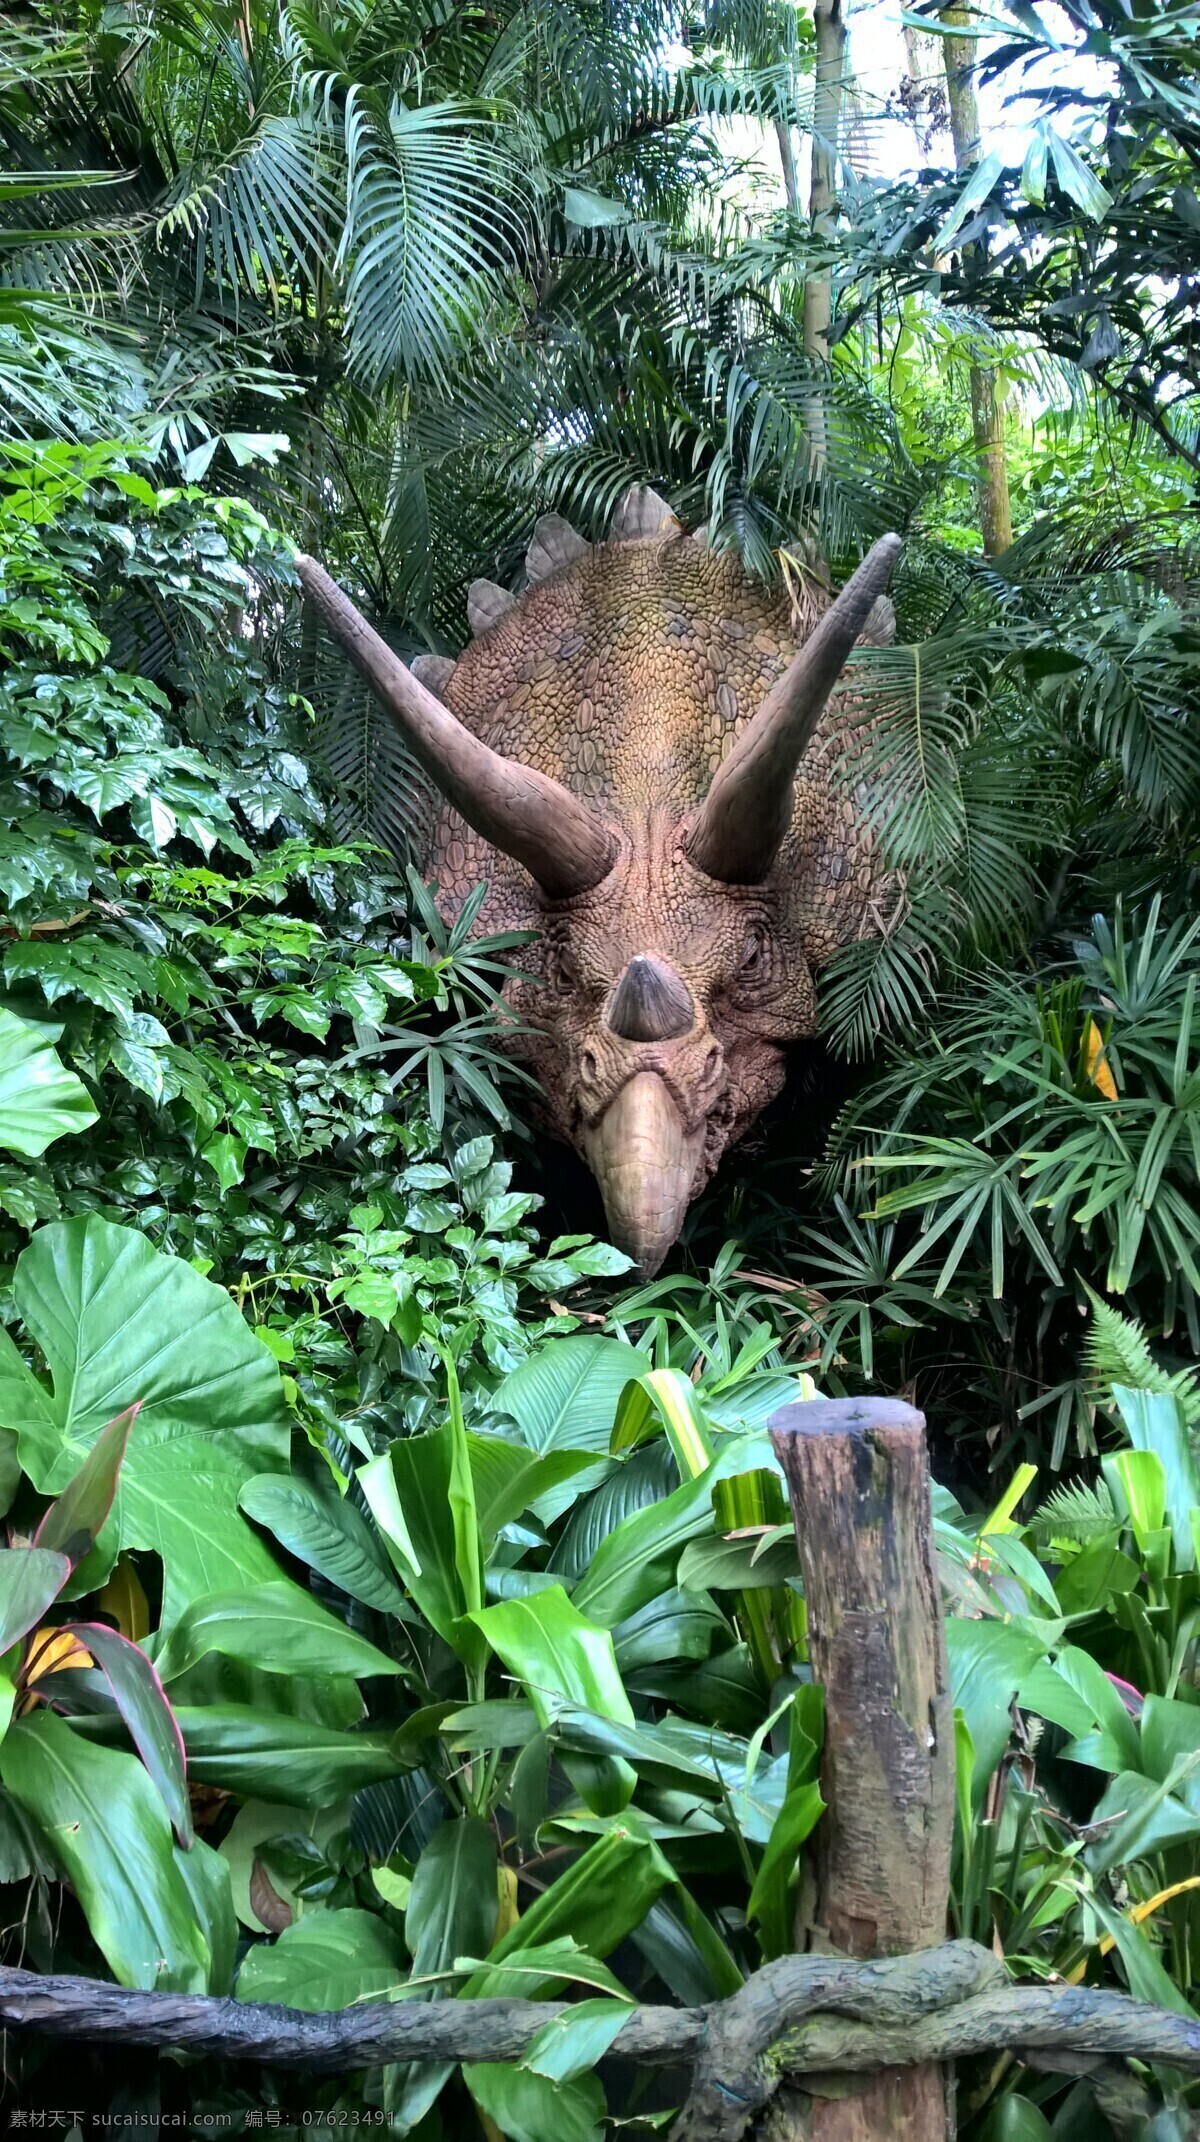 恐龙雕像 恐龙 动物园 野生 龙 森林 野生动物 生物世界